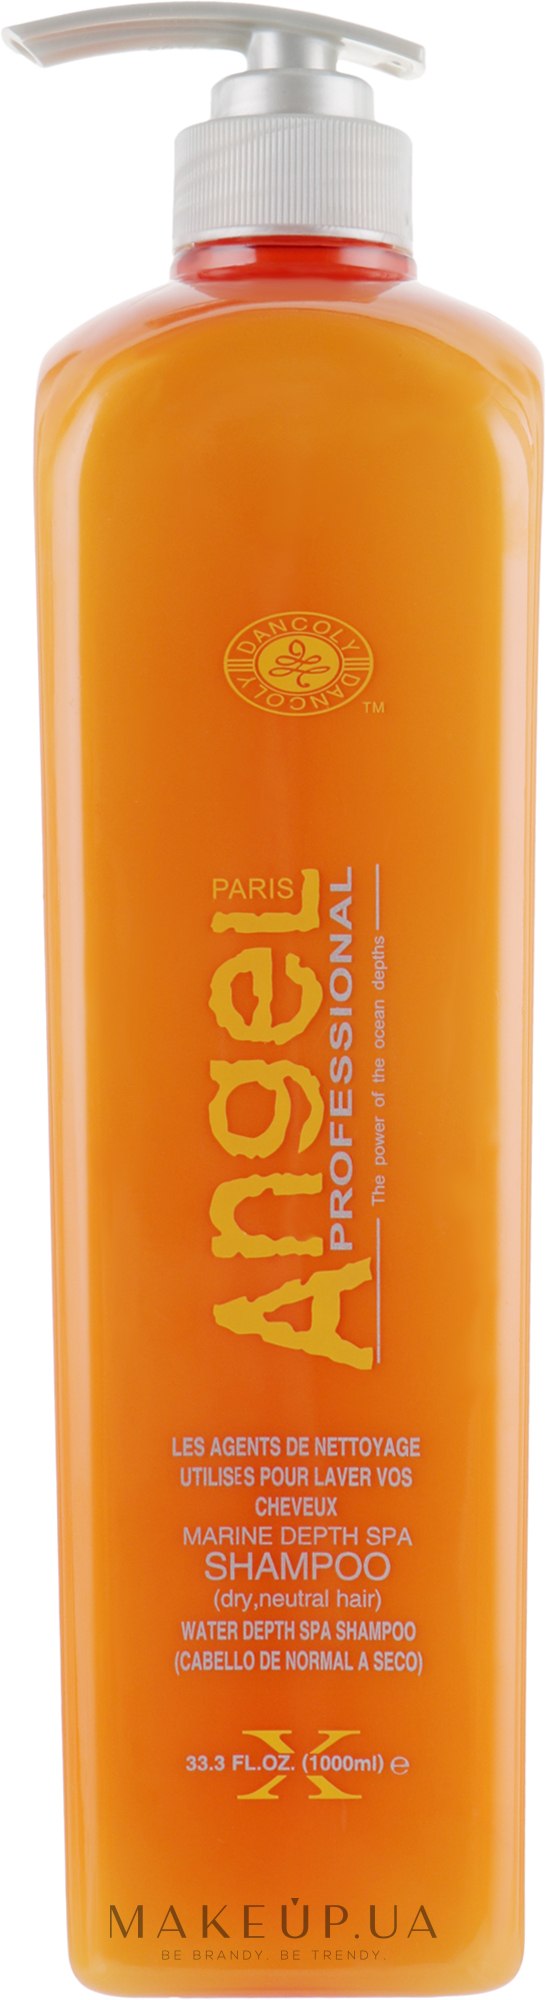 Шампунь для сухих и нормальных волос - Angel Professional Paris Shampoo for dry and Normal Hair — фото 1000ml